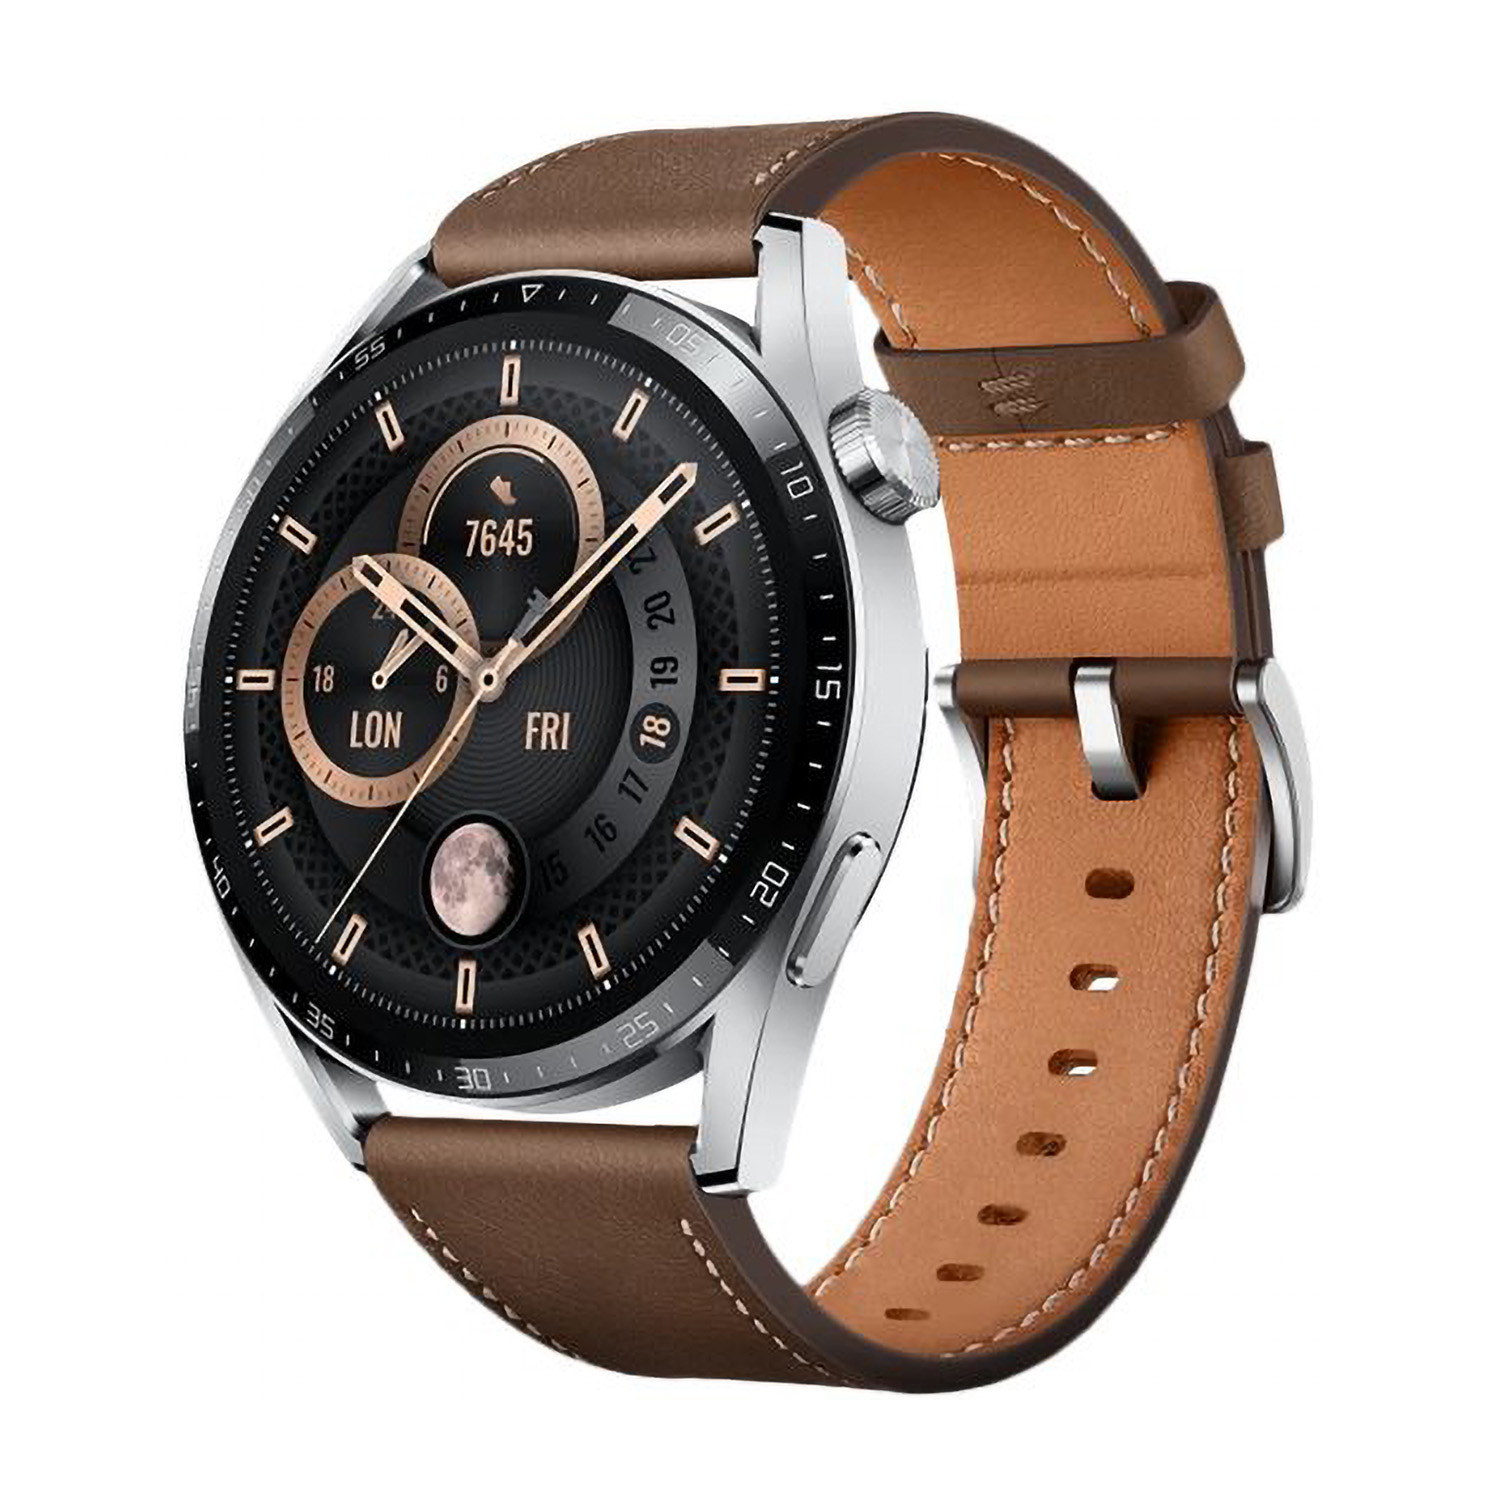 Huawei Watch GT3 46mm Braun | Smartwatch | Classic Edition | GPS | Wasserdicht bis 50 Meter | SpO2-Messung | Herzfrequenzmessung | AMOLED Display 